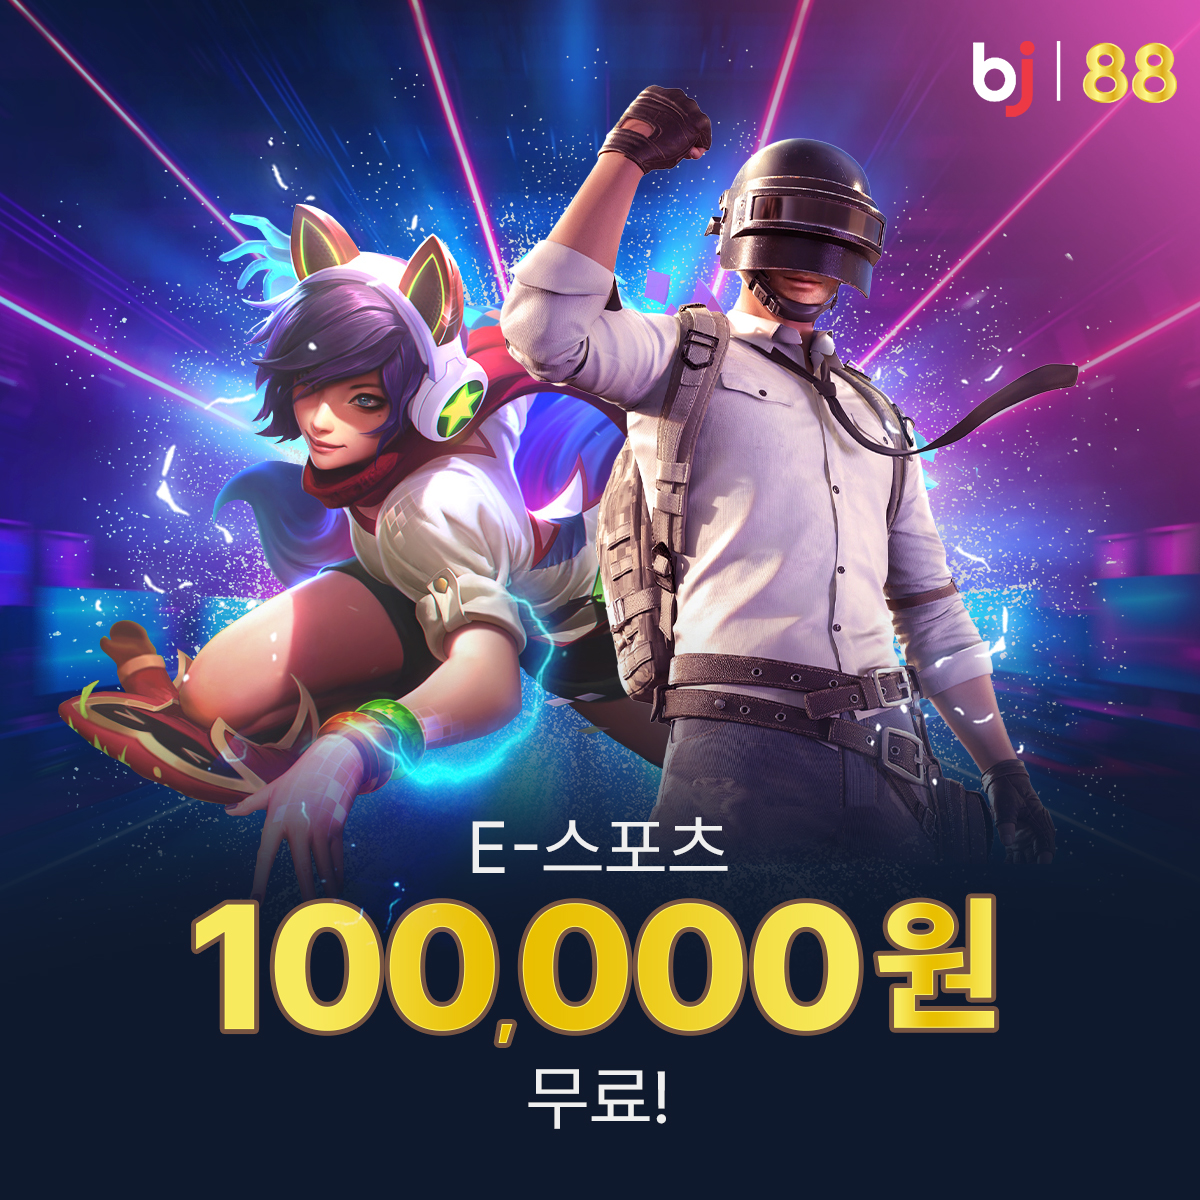 Bj88 E-스포츠 100,000원 무료!